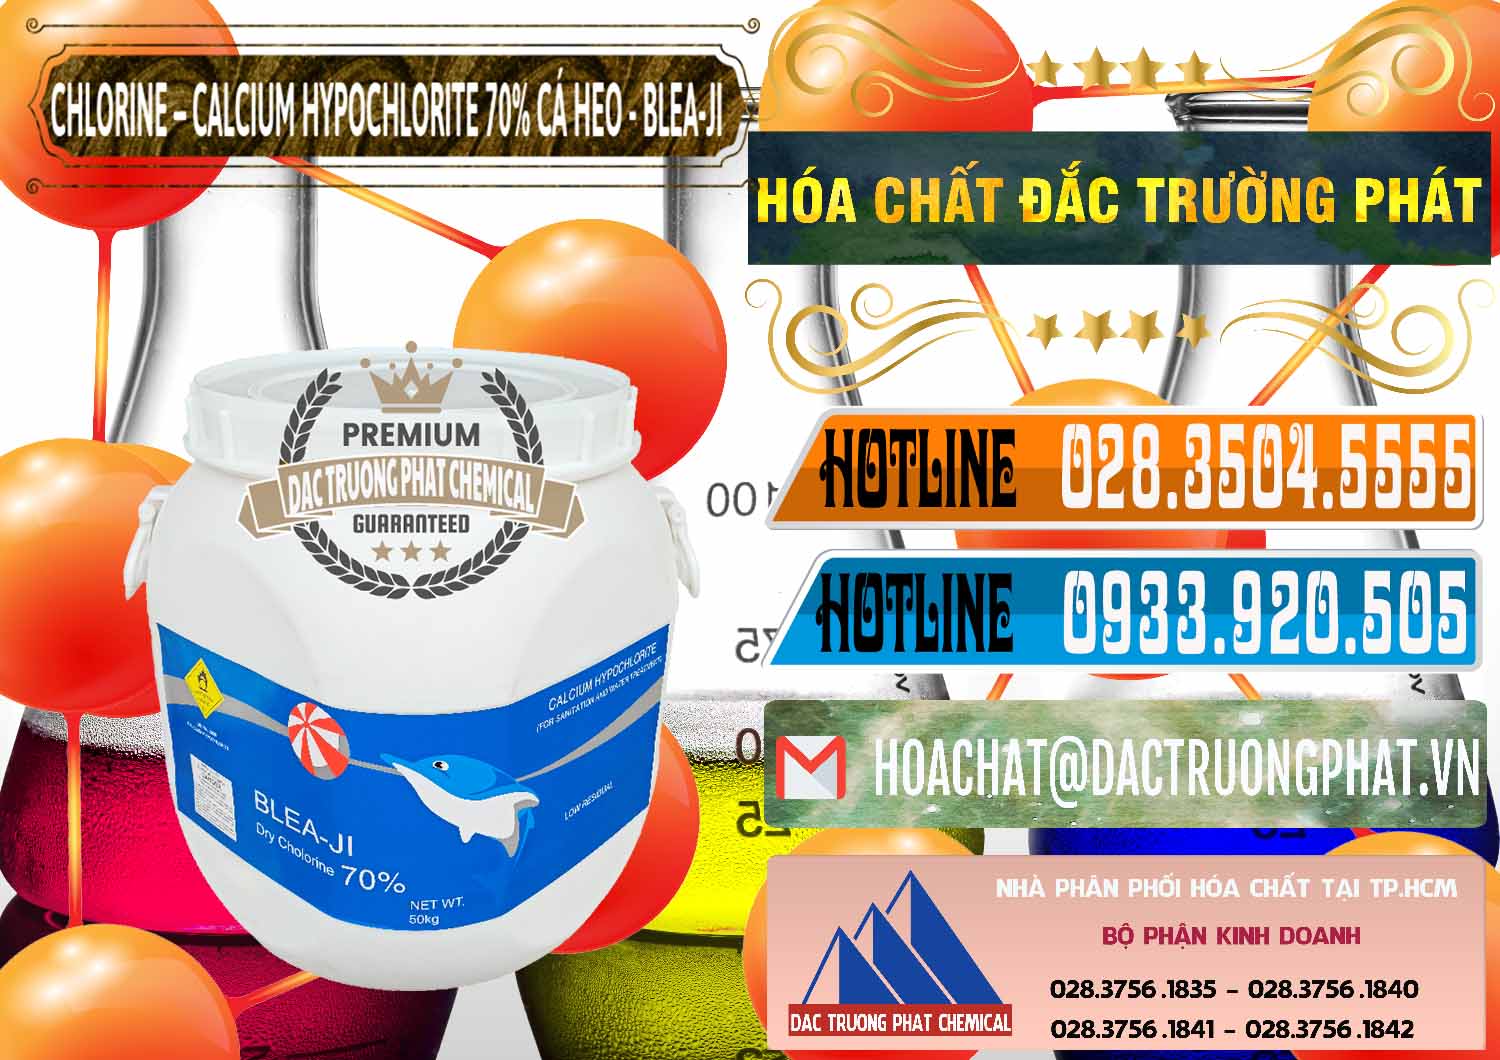 Nơi kinh doanh và bán Clorin - Chlorine Cá Heo 70% Blea-Ji Trung Quốc China - 0056 - Nơi cung ứng - phân phối hóa chất tại TP.HCM - stmp.net